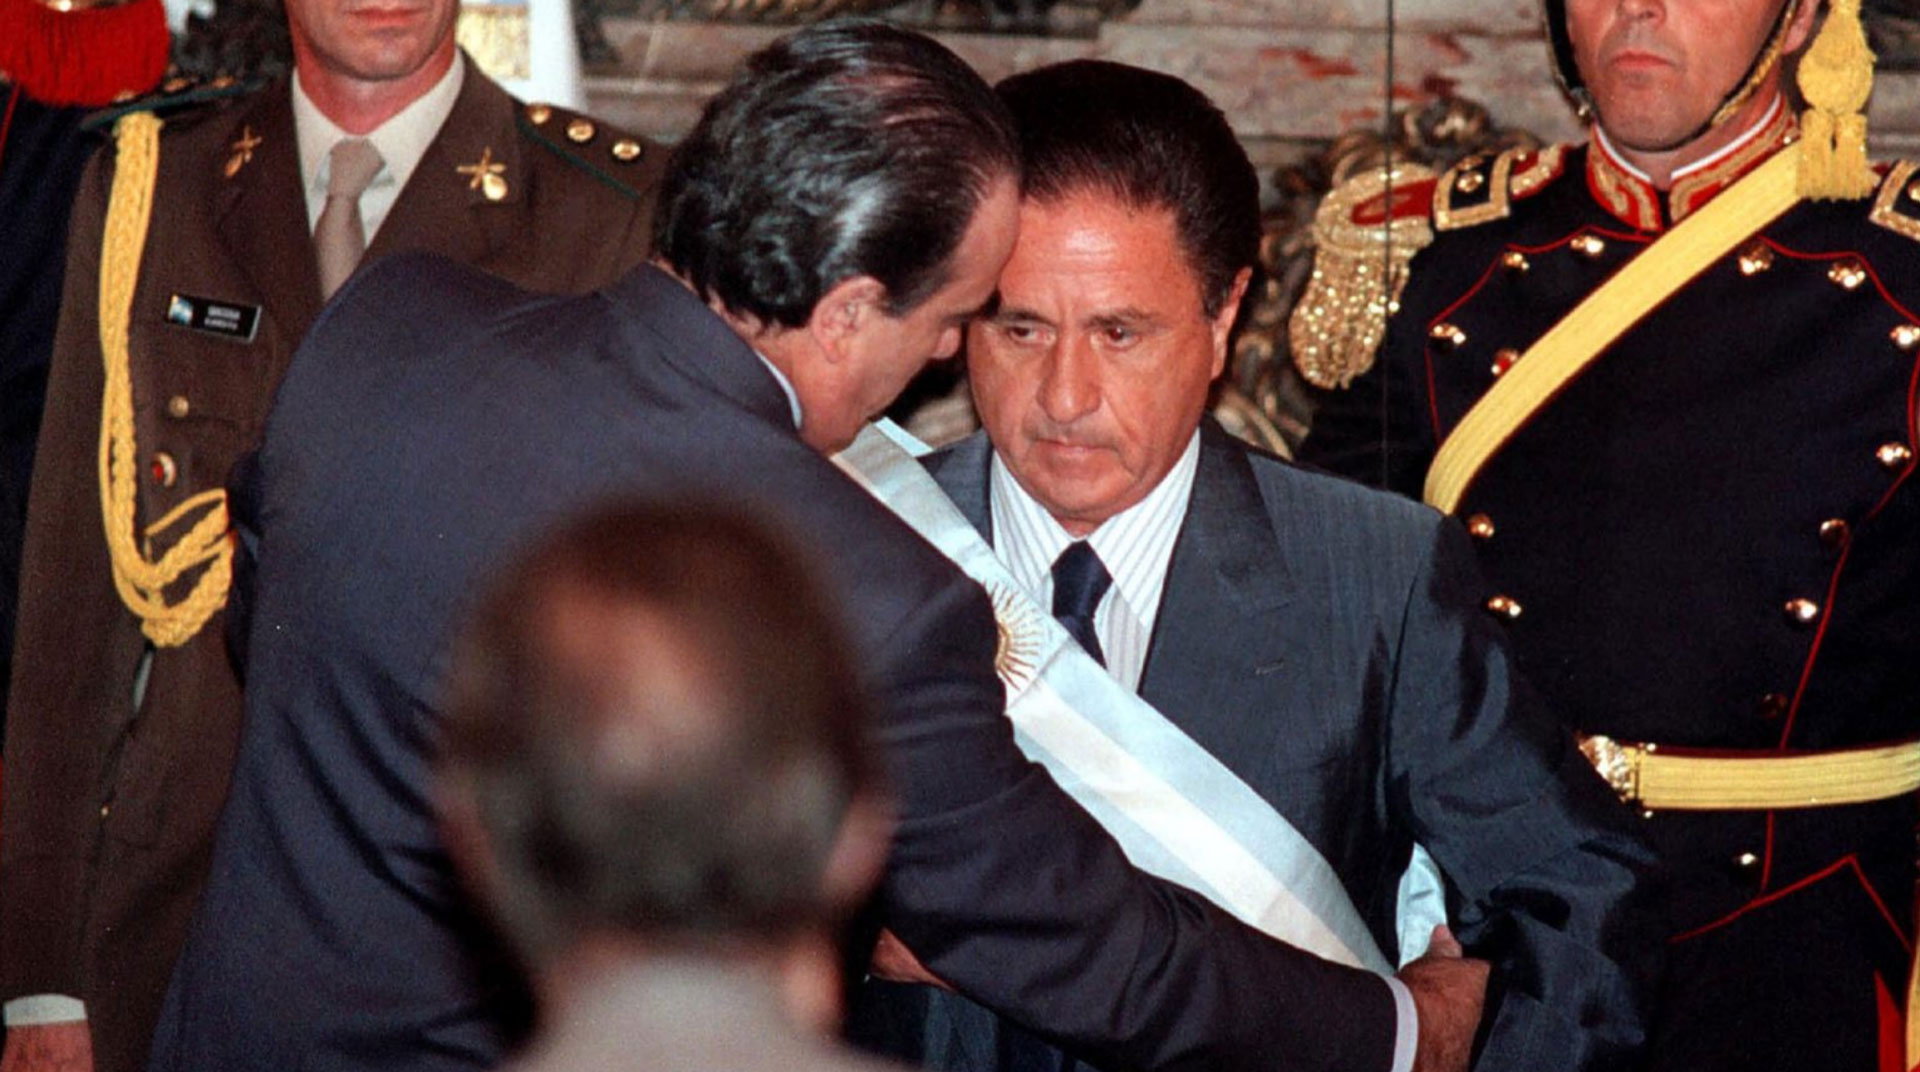 Duhalde, que entre 2002 y 2003 fue presidente interino de Argentina, eligió a Favaloro para la portada de su nuevo libro: “Porque, en su plena convicción de no tranzar con una ‘sociedad corrupta', decidió entregar su vida”.